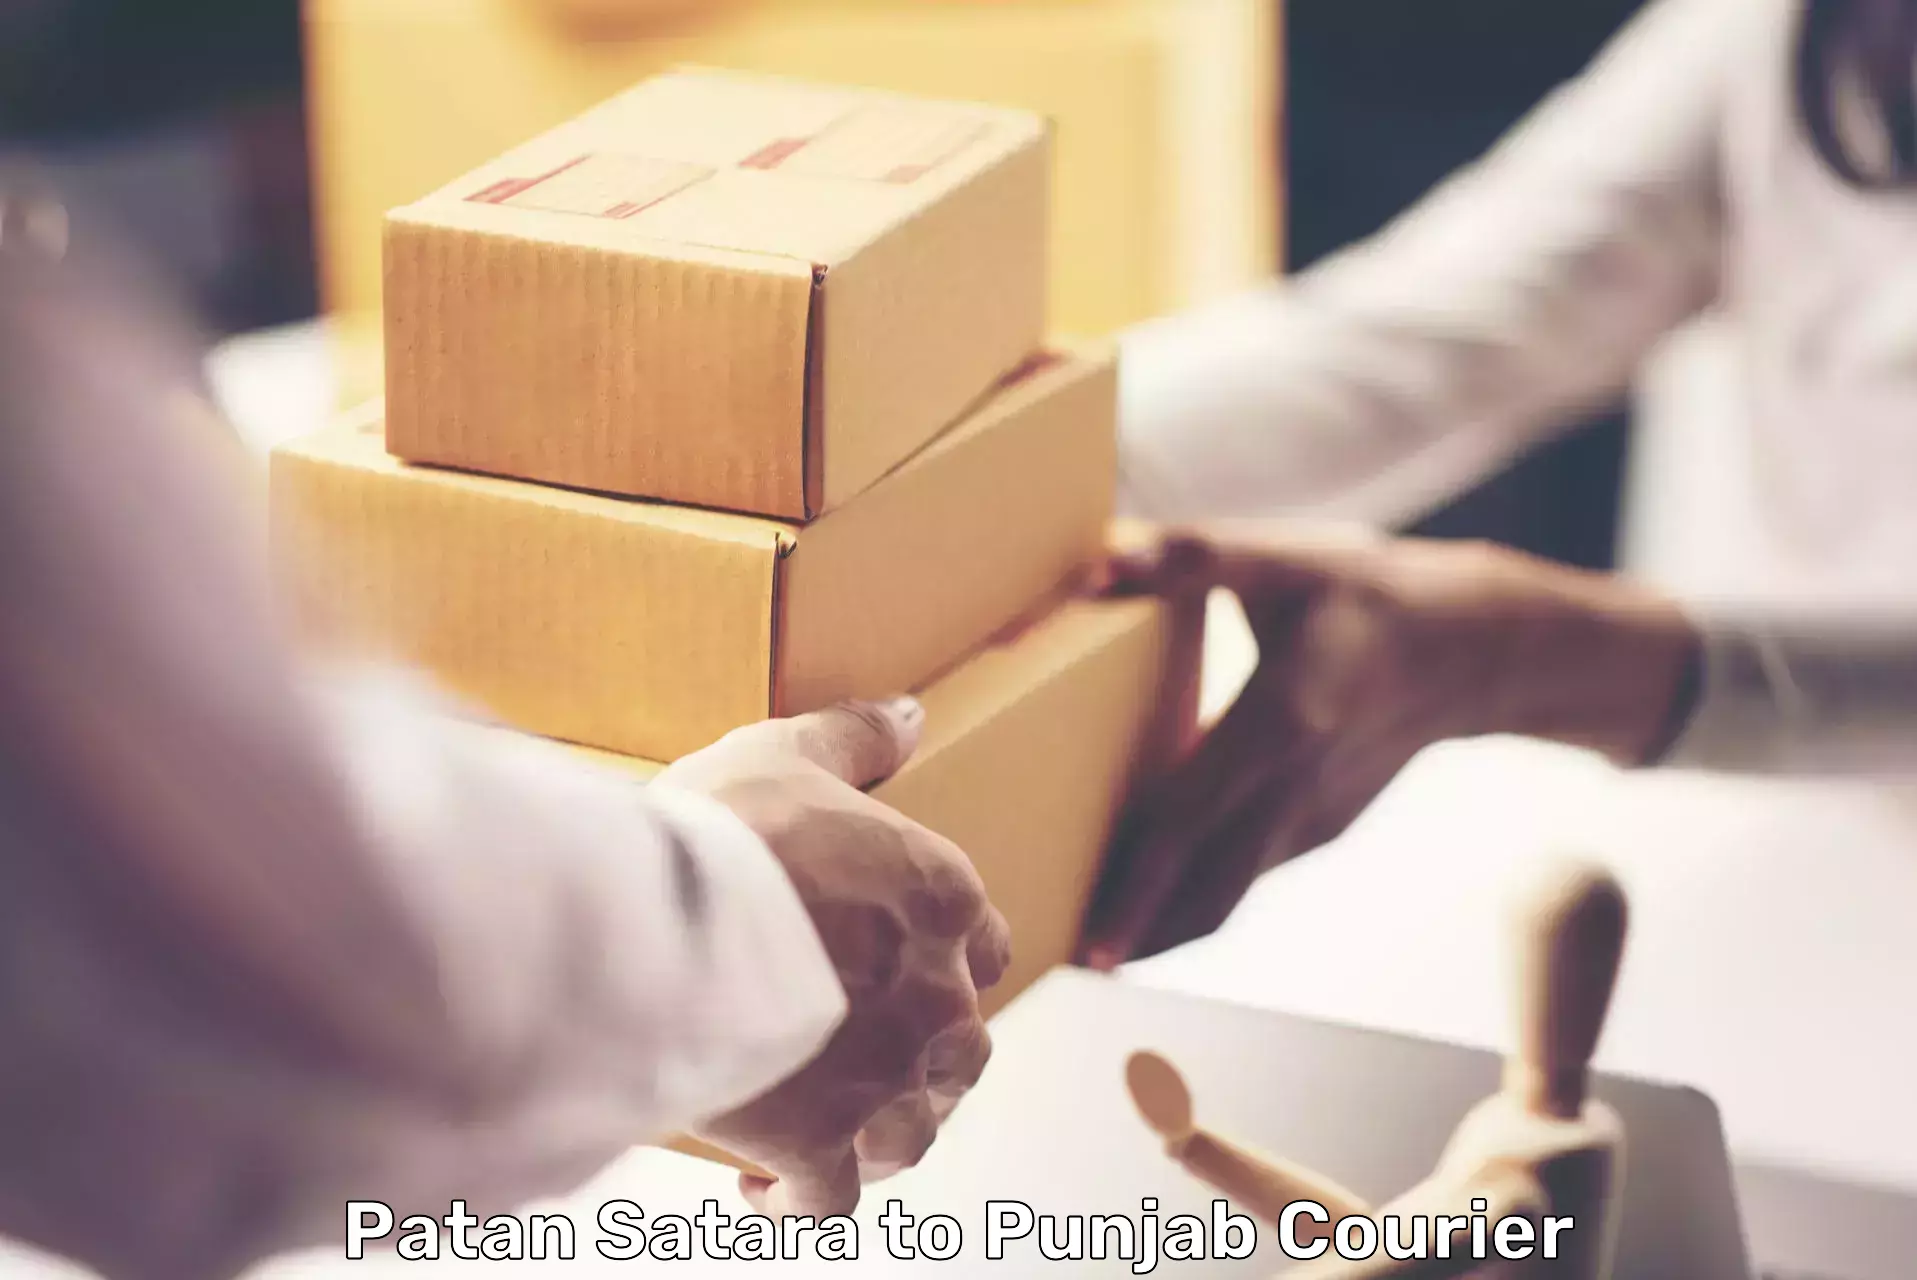 High-speed logistics services Patan Satara to Punjab